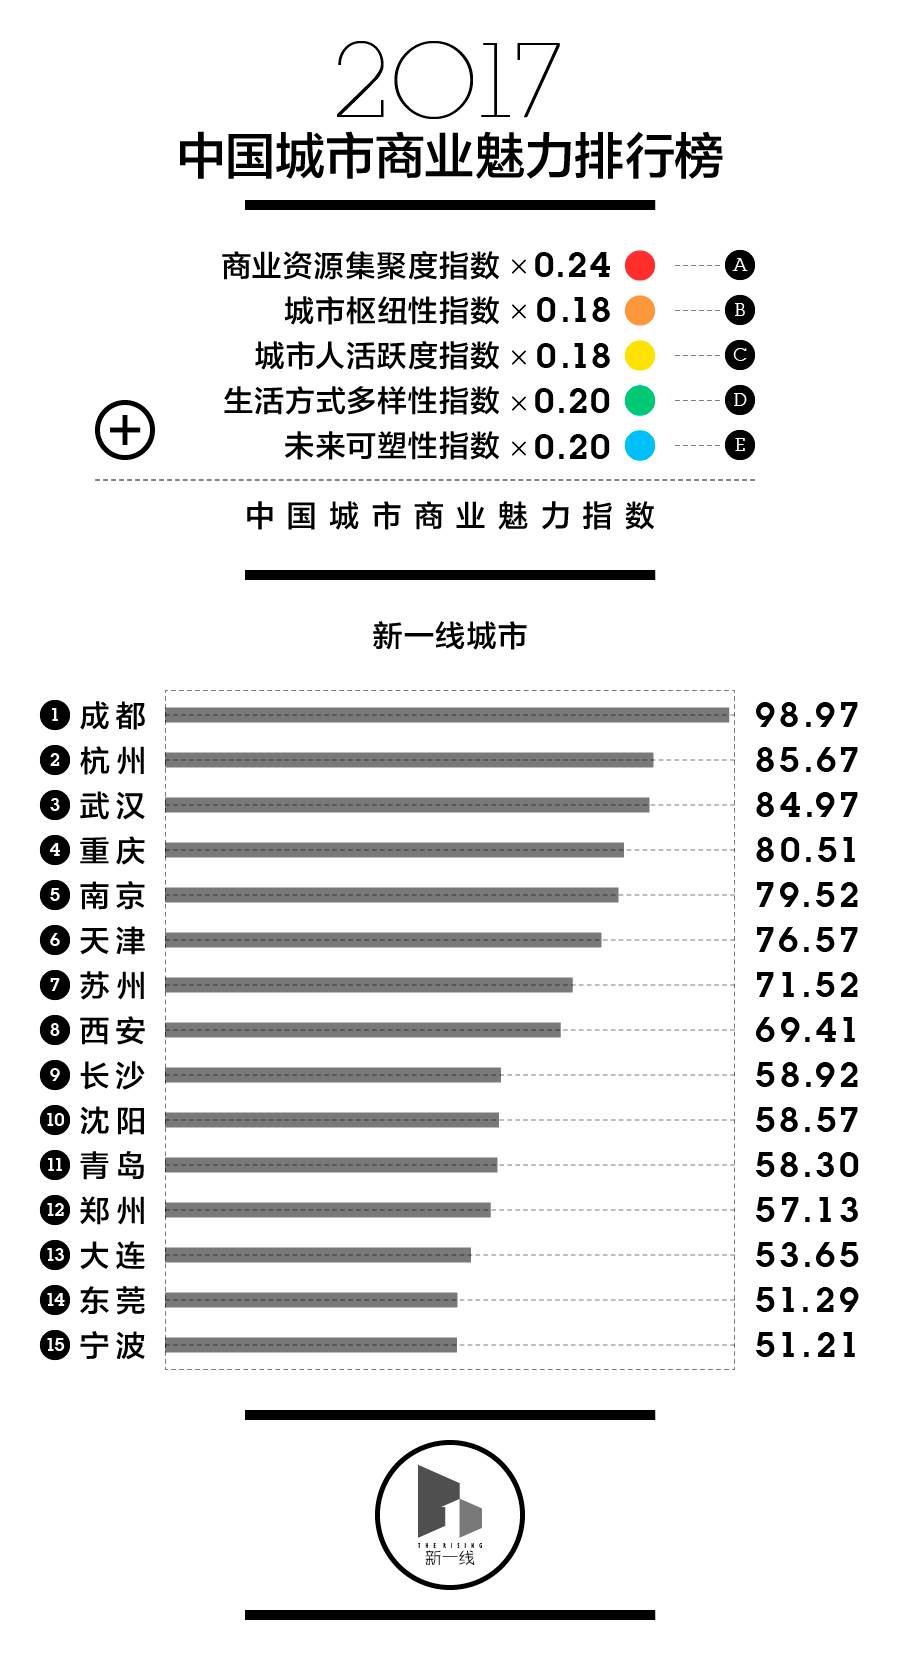 中国家庭现低龄留学热 留学消费向工薪家庭延伸